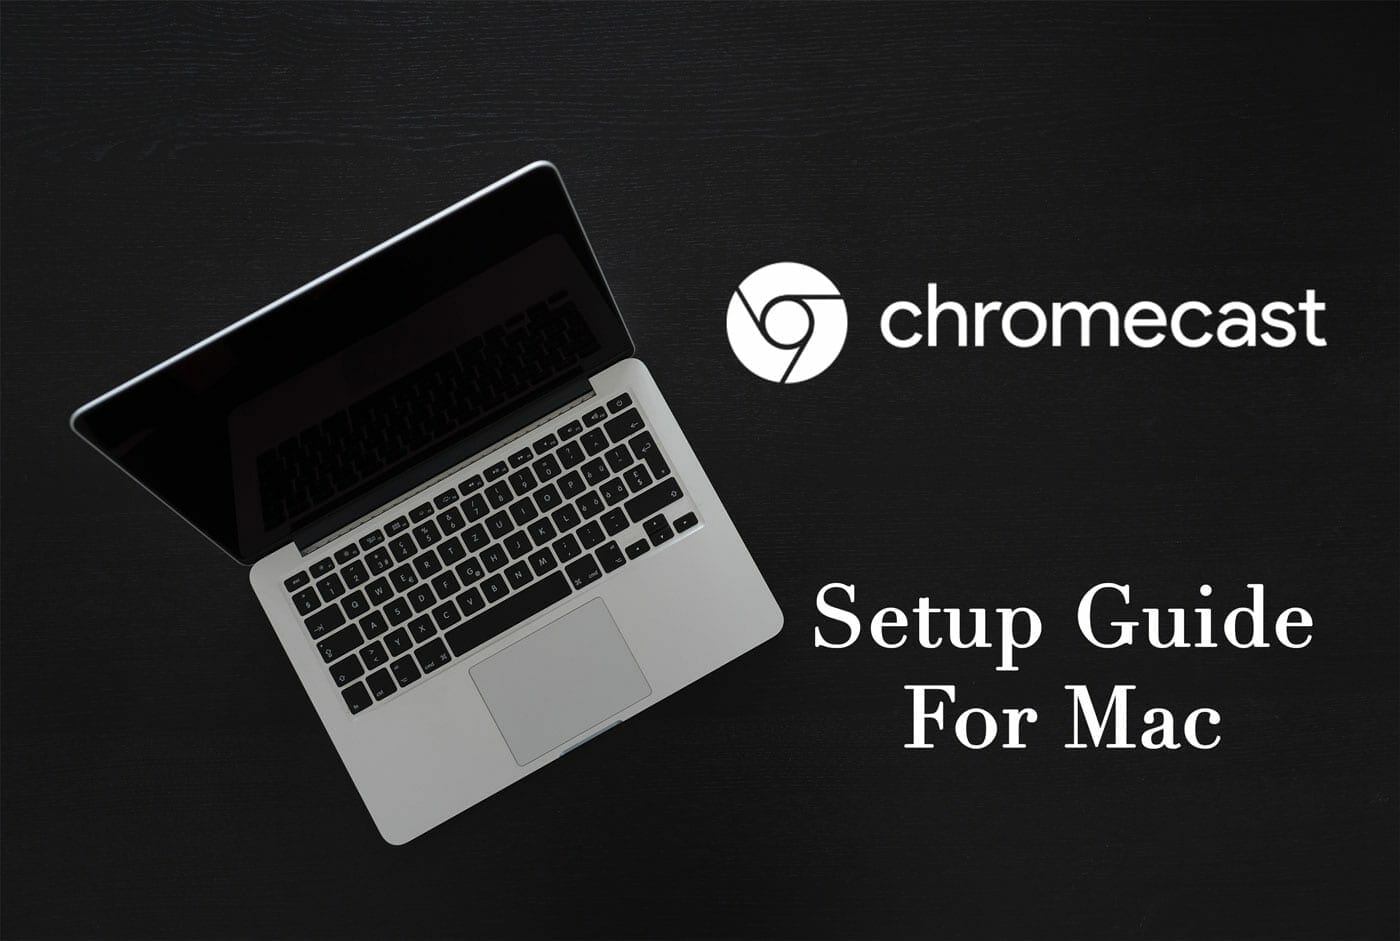 fejl Es prik How to Setup Chromecast on MacOS iMac or Macbook (Install Guide)